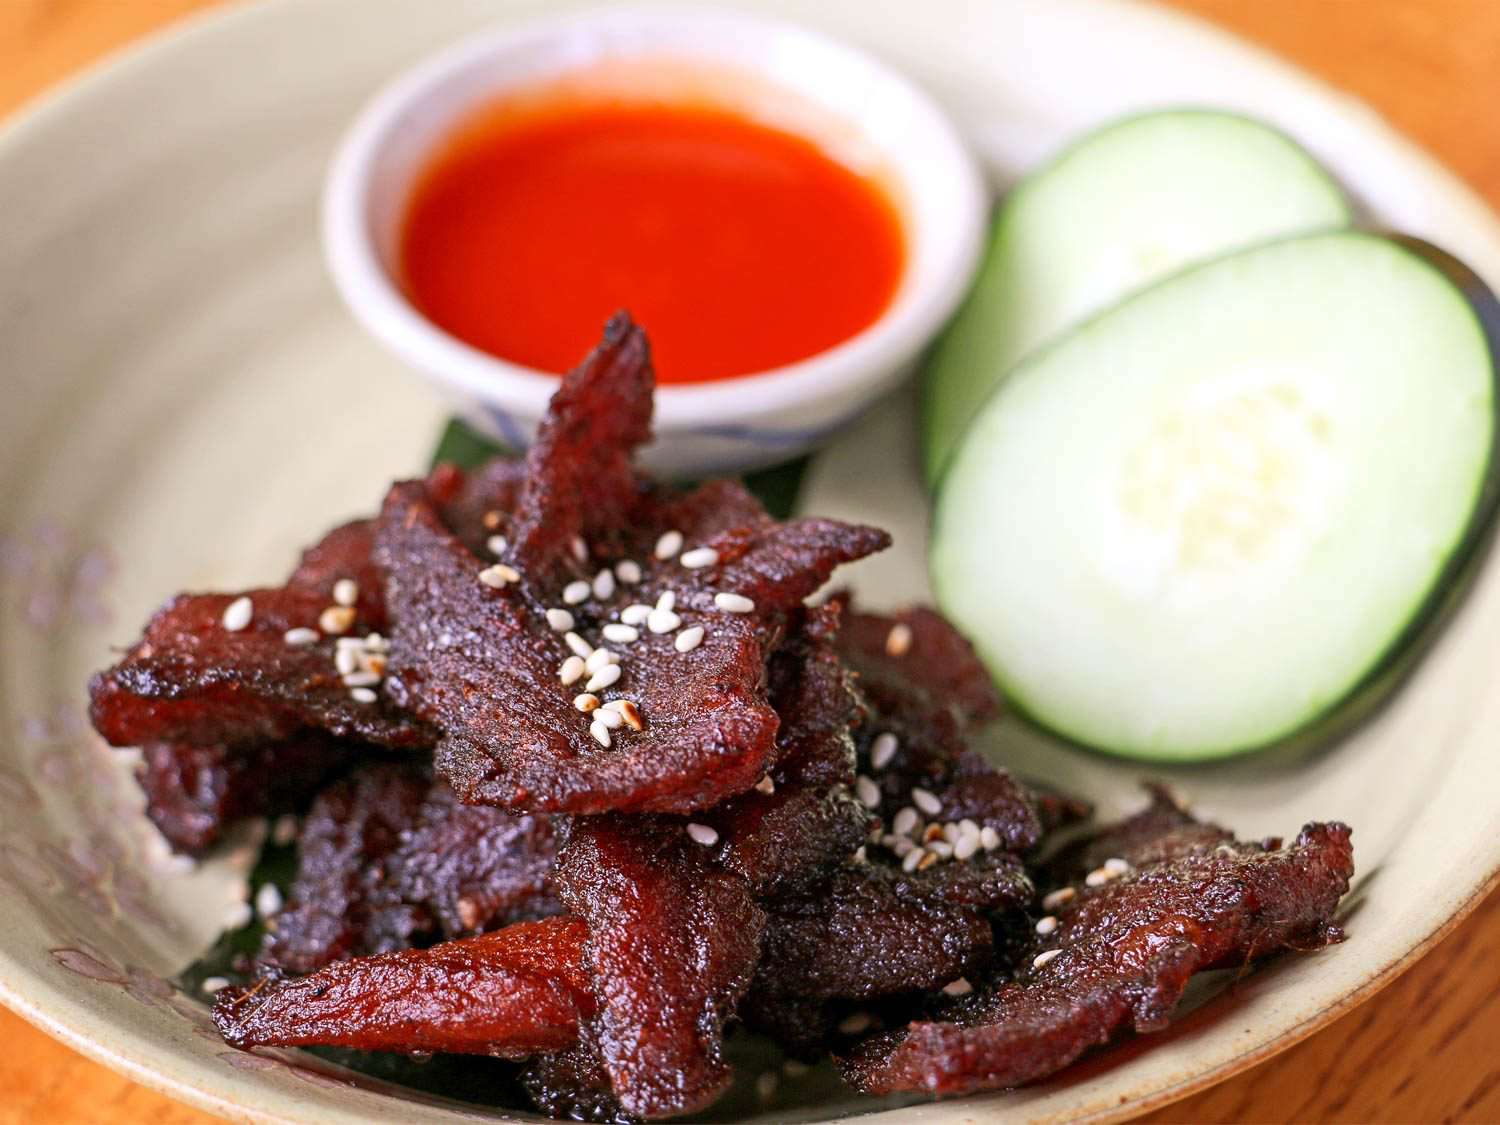 一盘深红色的晒干猪肉(muu haeng)，旁边是黄瓜片和一小碗蘸酱